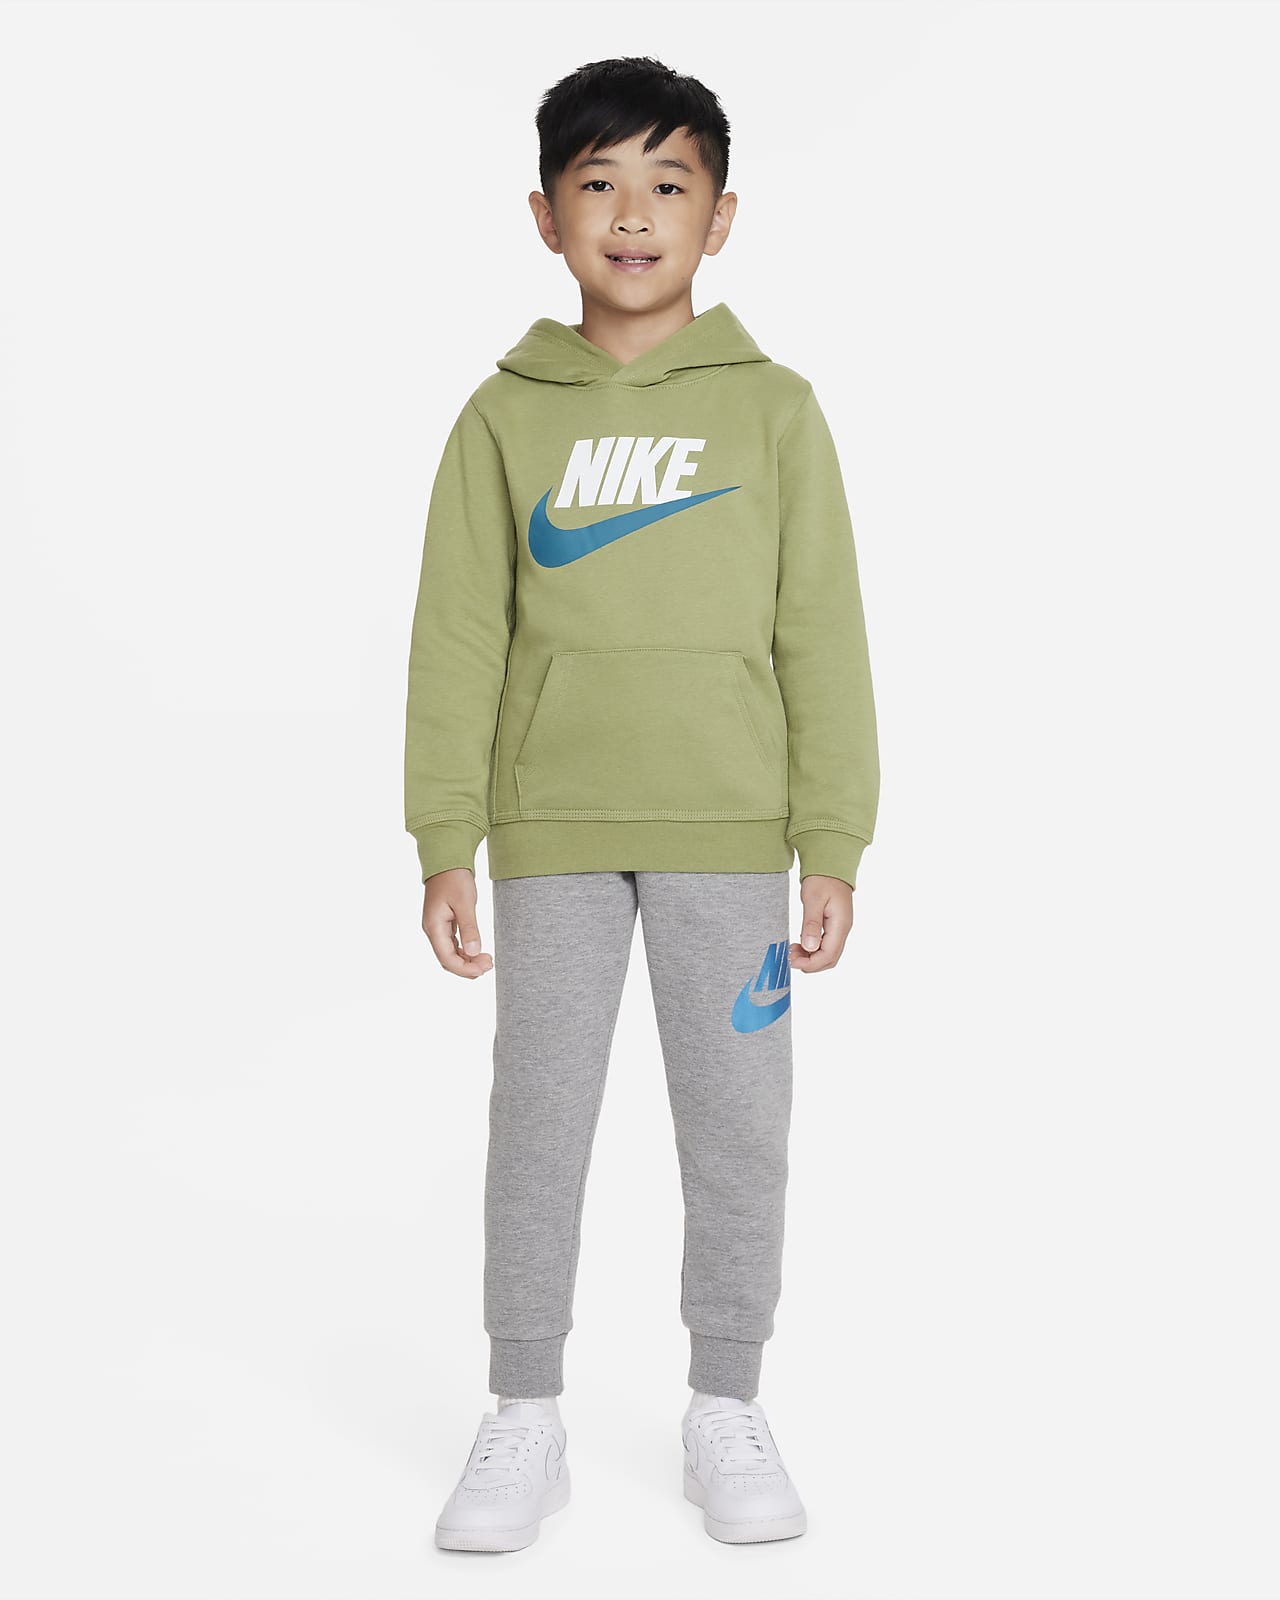 Sudadera con gorro sin cierre para niños talla pequeña Club Nike.com